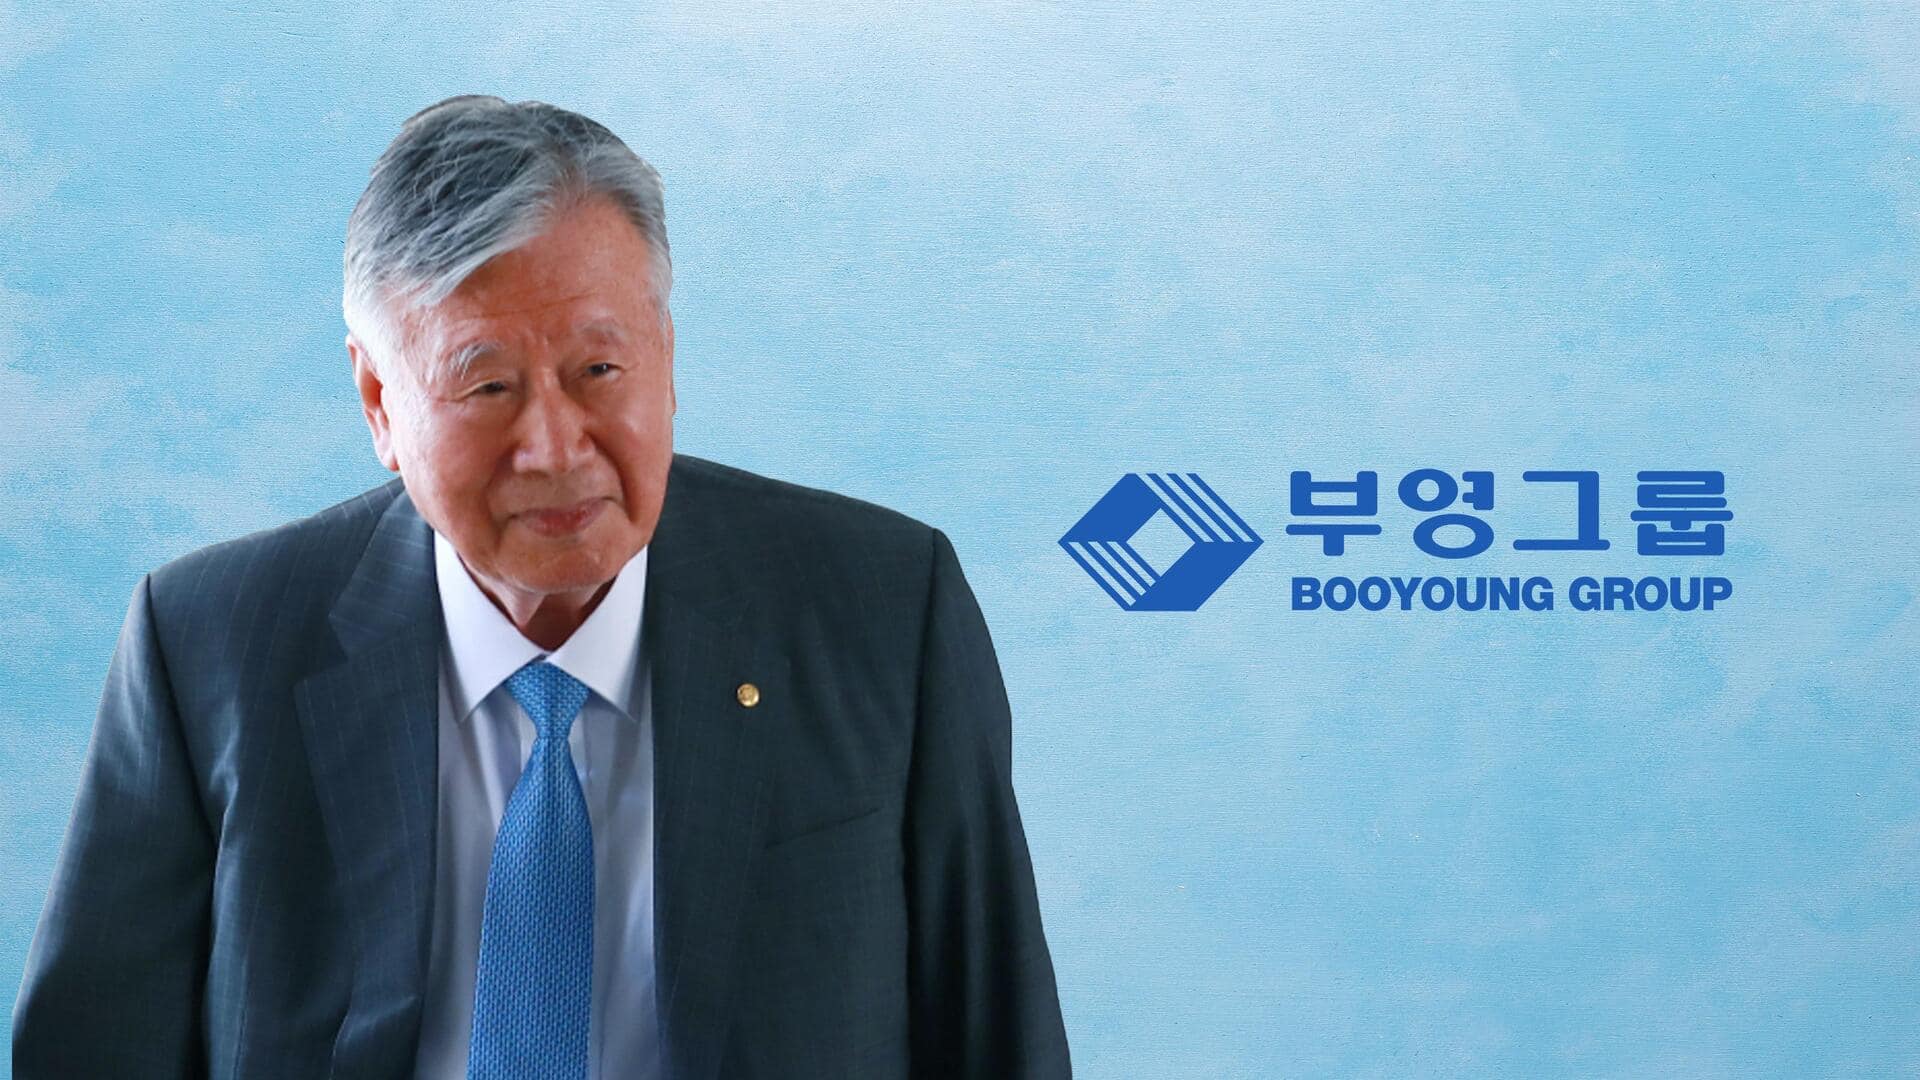 दक्षिण कोरिया: इस अरबपति व्यक्ति ने गांव के सारे लोगों को बना दिया लखपति, जानिए कैसे